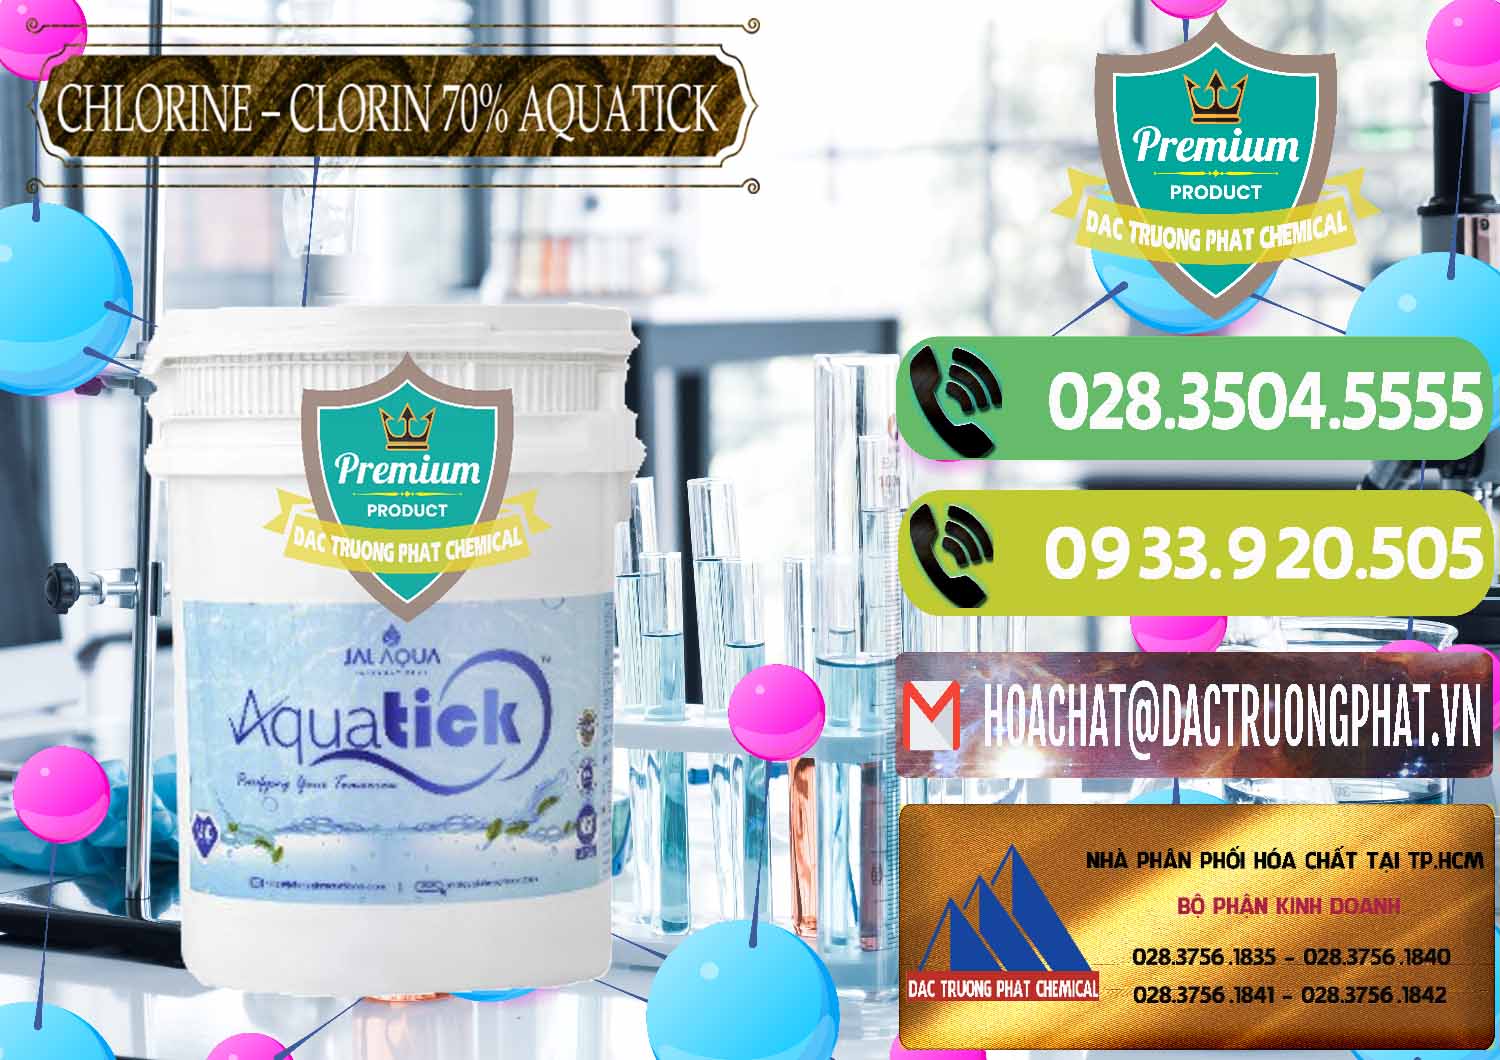 Đơn vị nhập khẩu và bán Chlorine – Clorin 70% Aquatick Thùng Cao Jal Aqua Ấn Độ India - 0237 - Chuyên cung cấp và phân phối hóa chất tại TP.HCM - hoachatmientay.vn